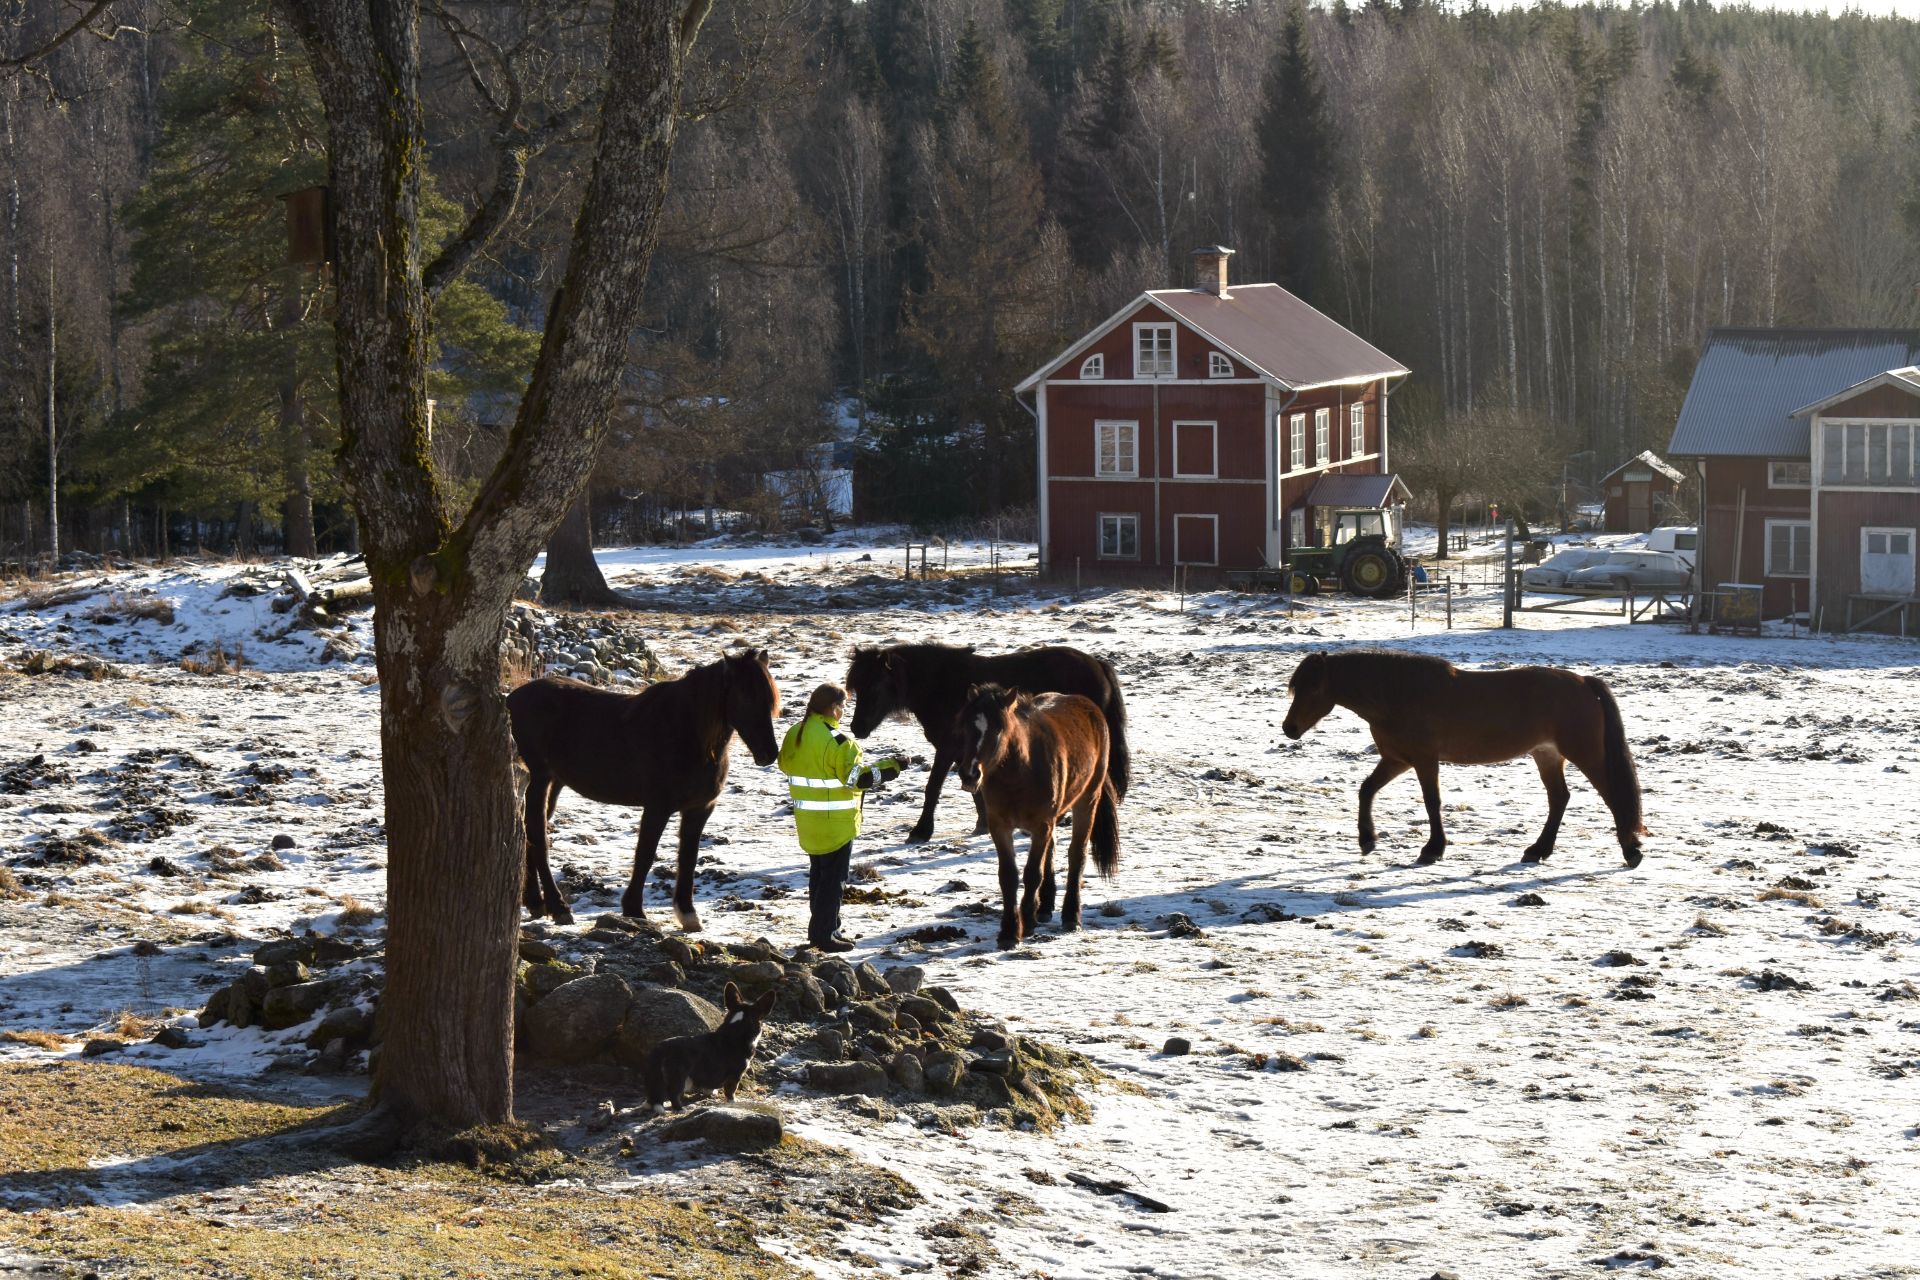 Görel Eldstål Willén bedriver häst- och hundverksamhet på gården i byn Resmoren, Smedjebacken Kommun i Dalarna. Fastighetsvärdet har nu mer än halverats på grund av vindkraftsplanerna intill byn där hon bor.